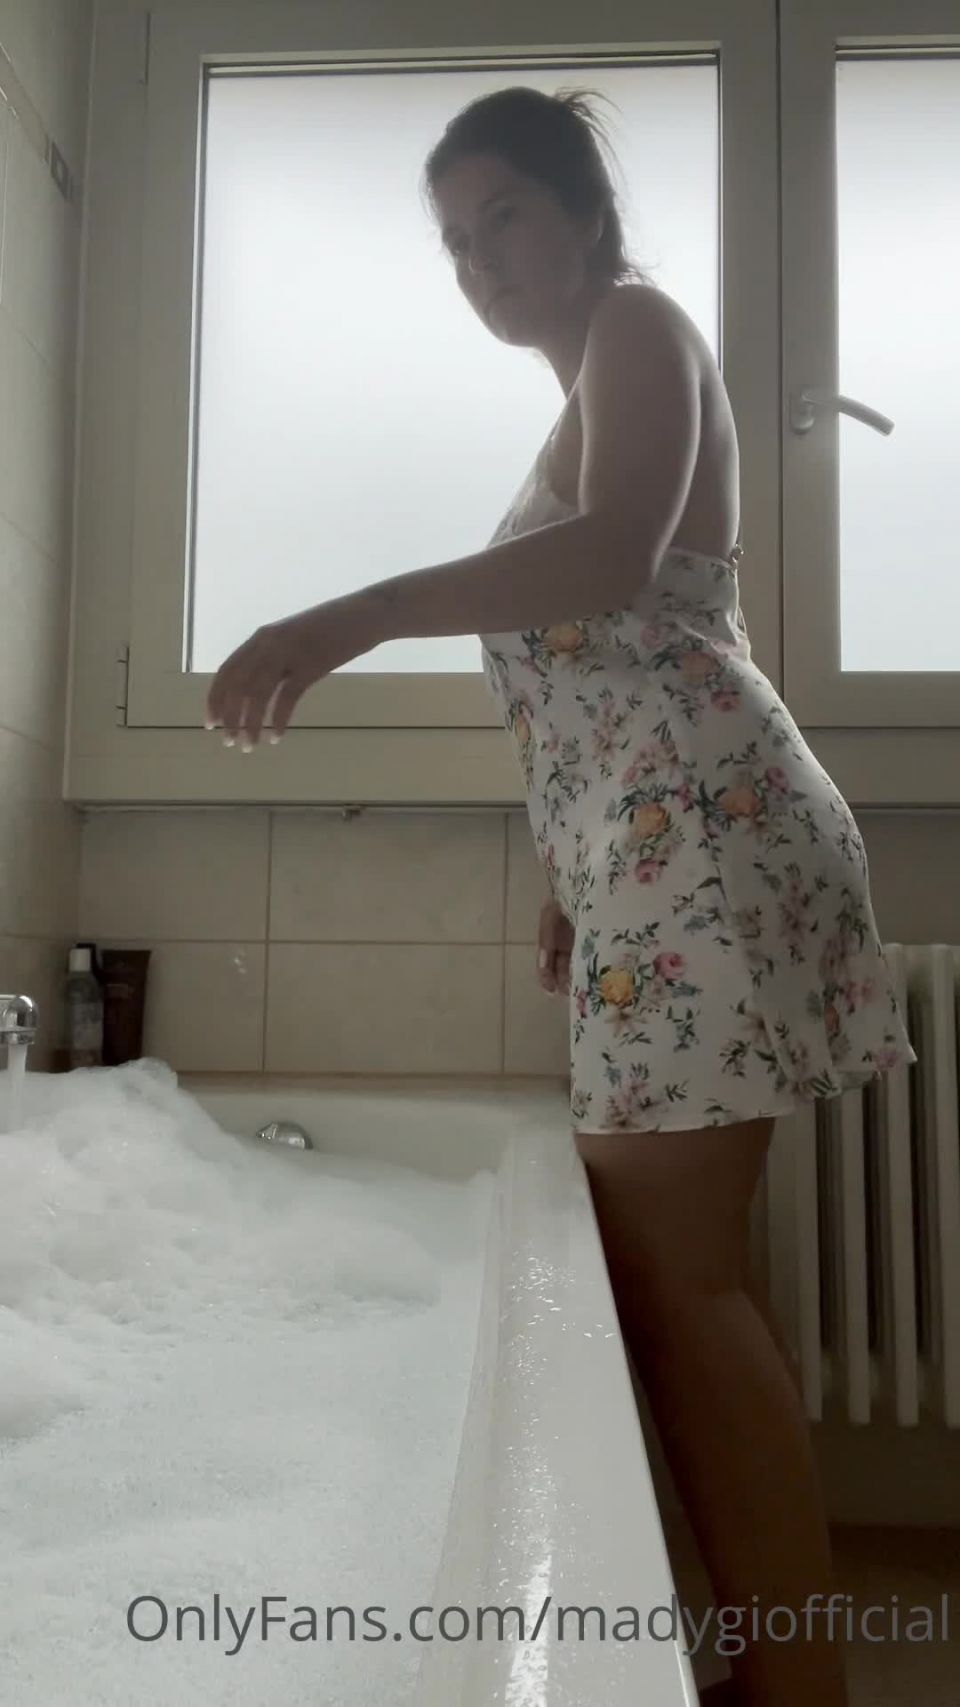 xxx video clip 16 OnlyFans – Mady Gio Nudes Bathtub, bread fetish on italian porn 